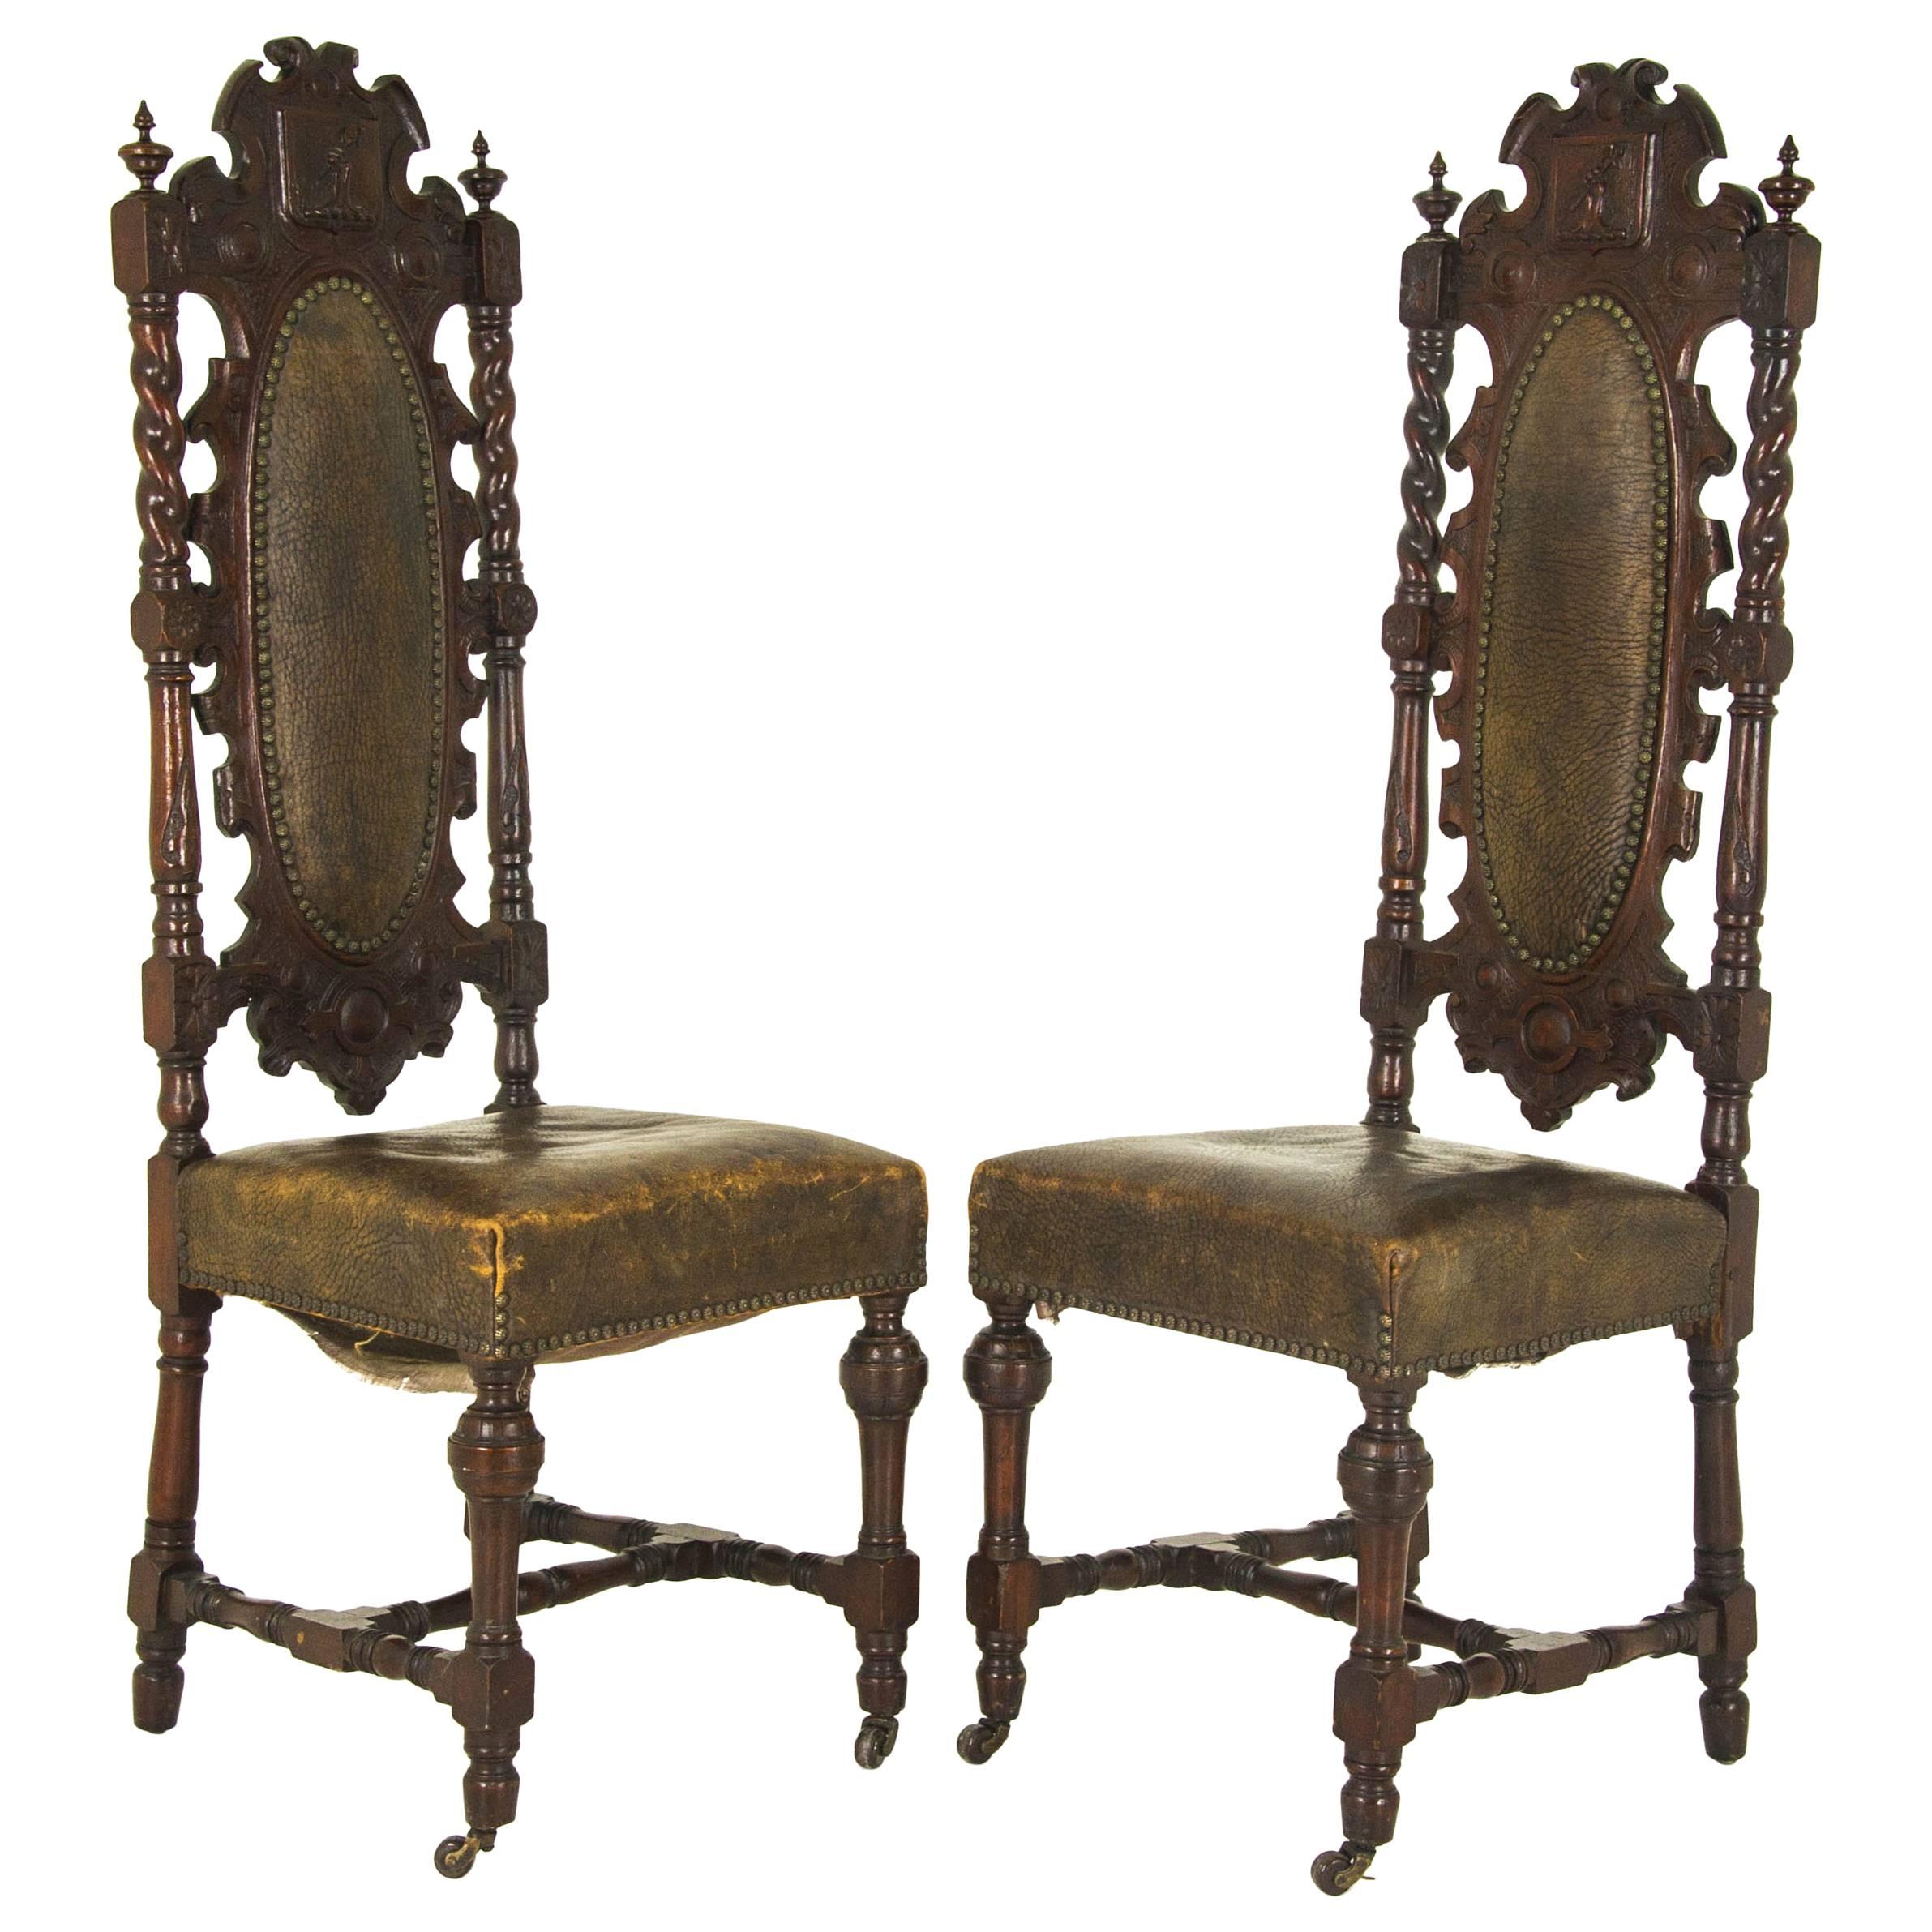 Antique Hall Chairs Renaissance Revival, Scotland, 1880